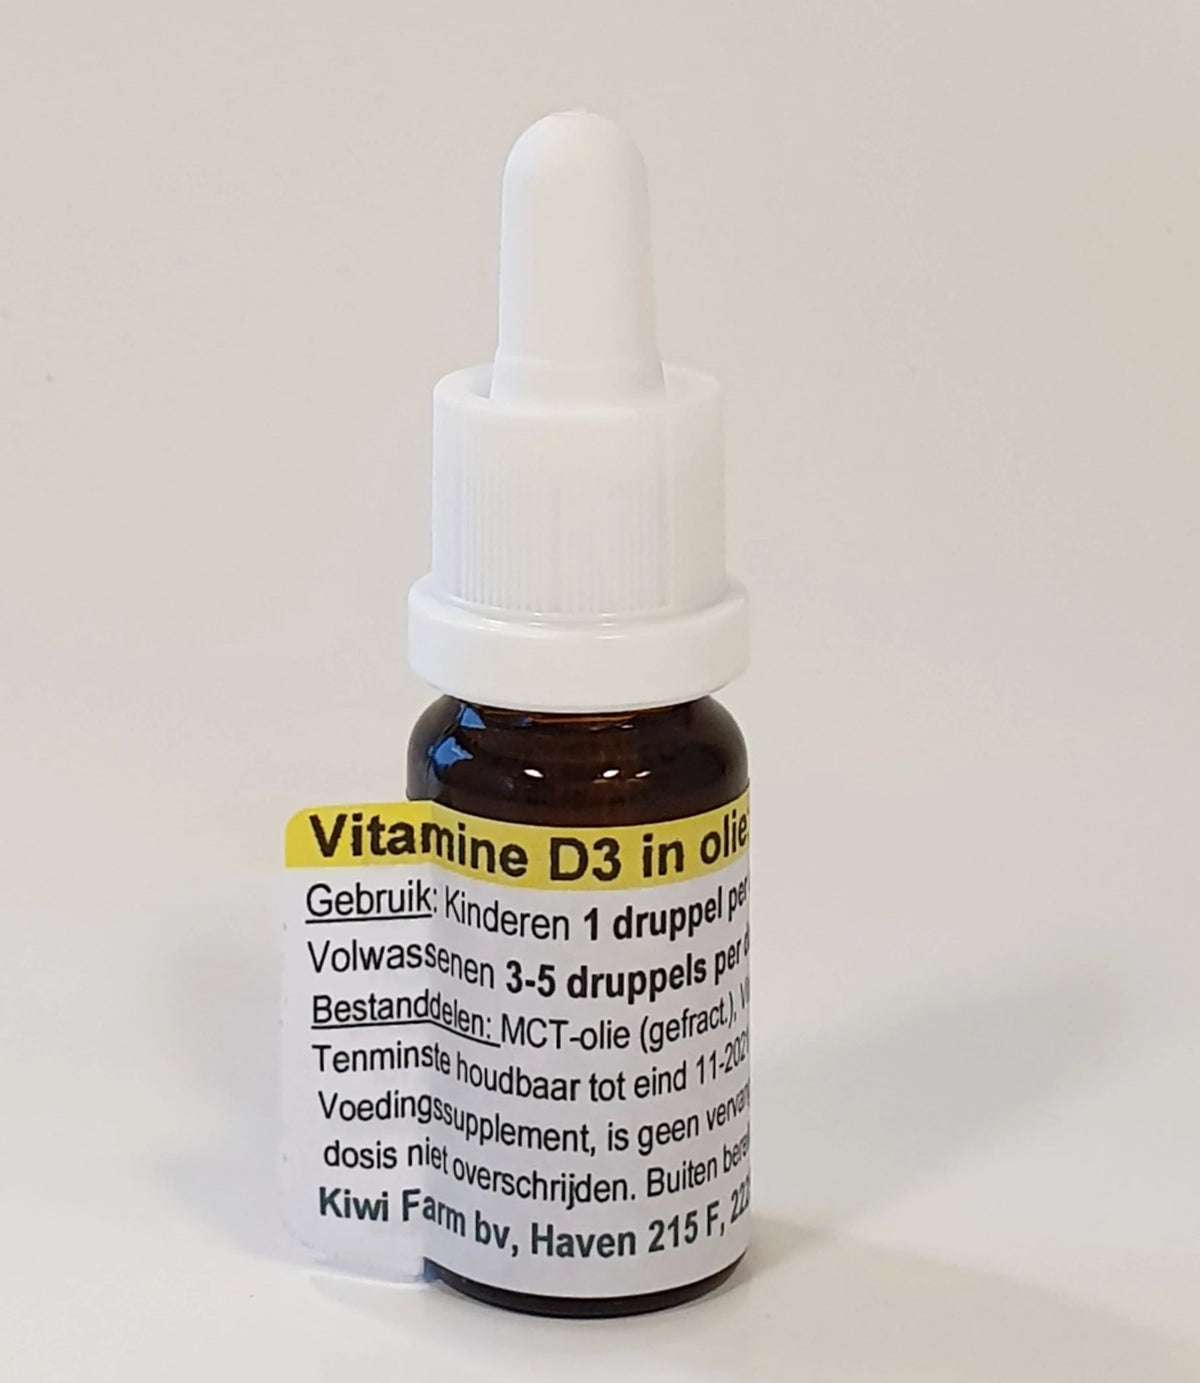 Vitamine D3 in olie